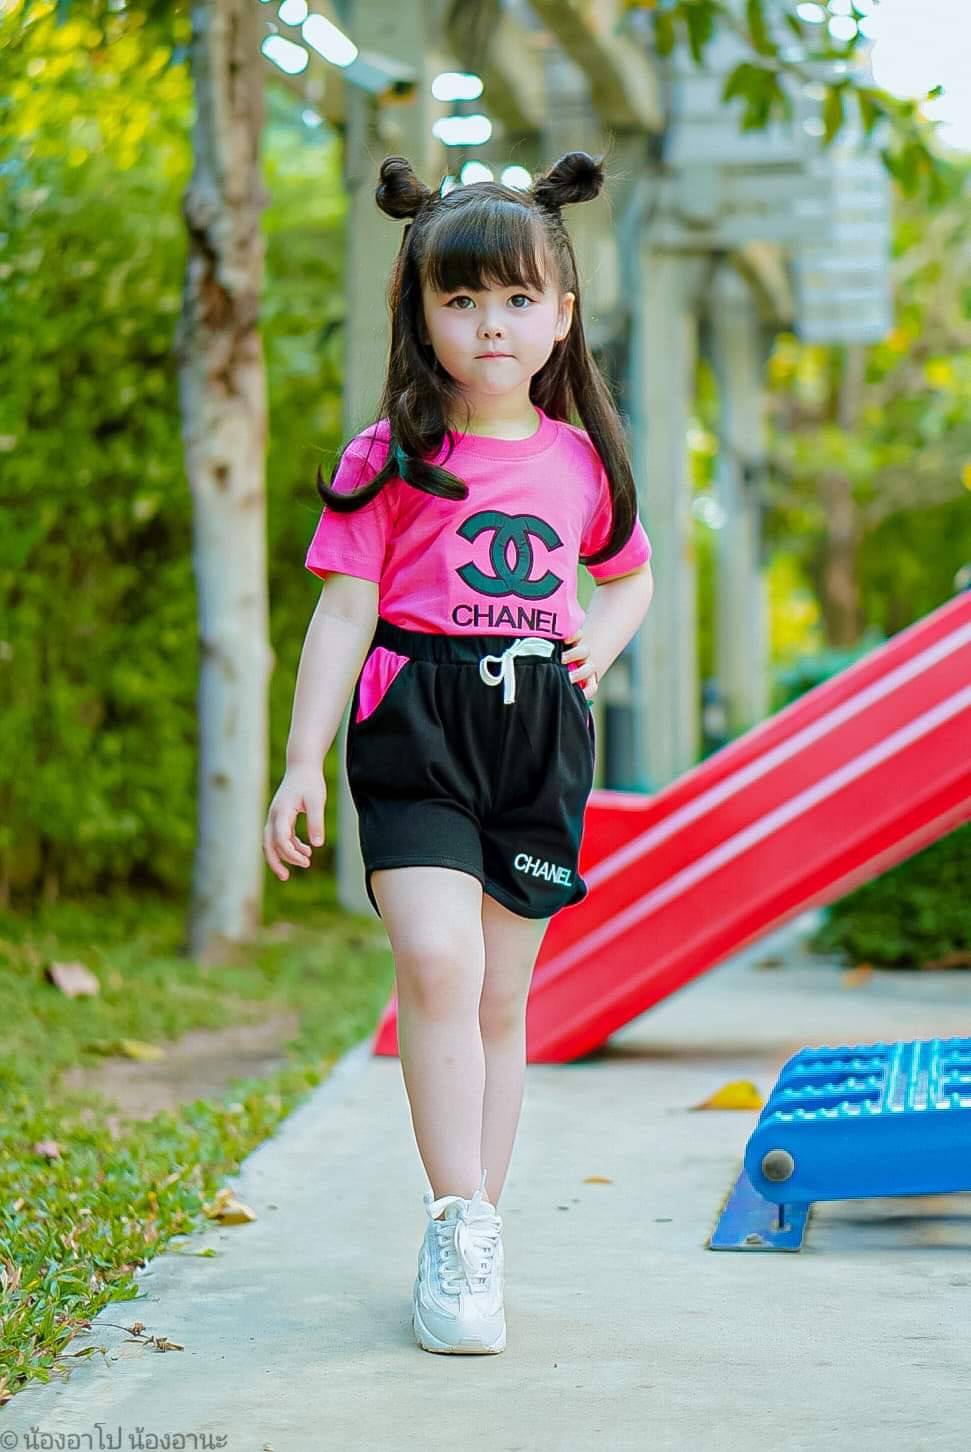 1 ชุด  เสื้อผ้าเด็กผู้หญิง ขาสั้น เข้าชุด (จัดคละลาย ) มีsize S M L XL